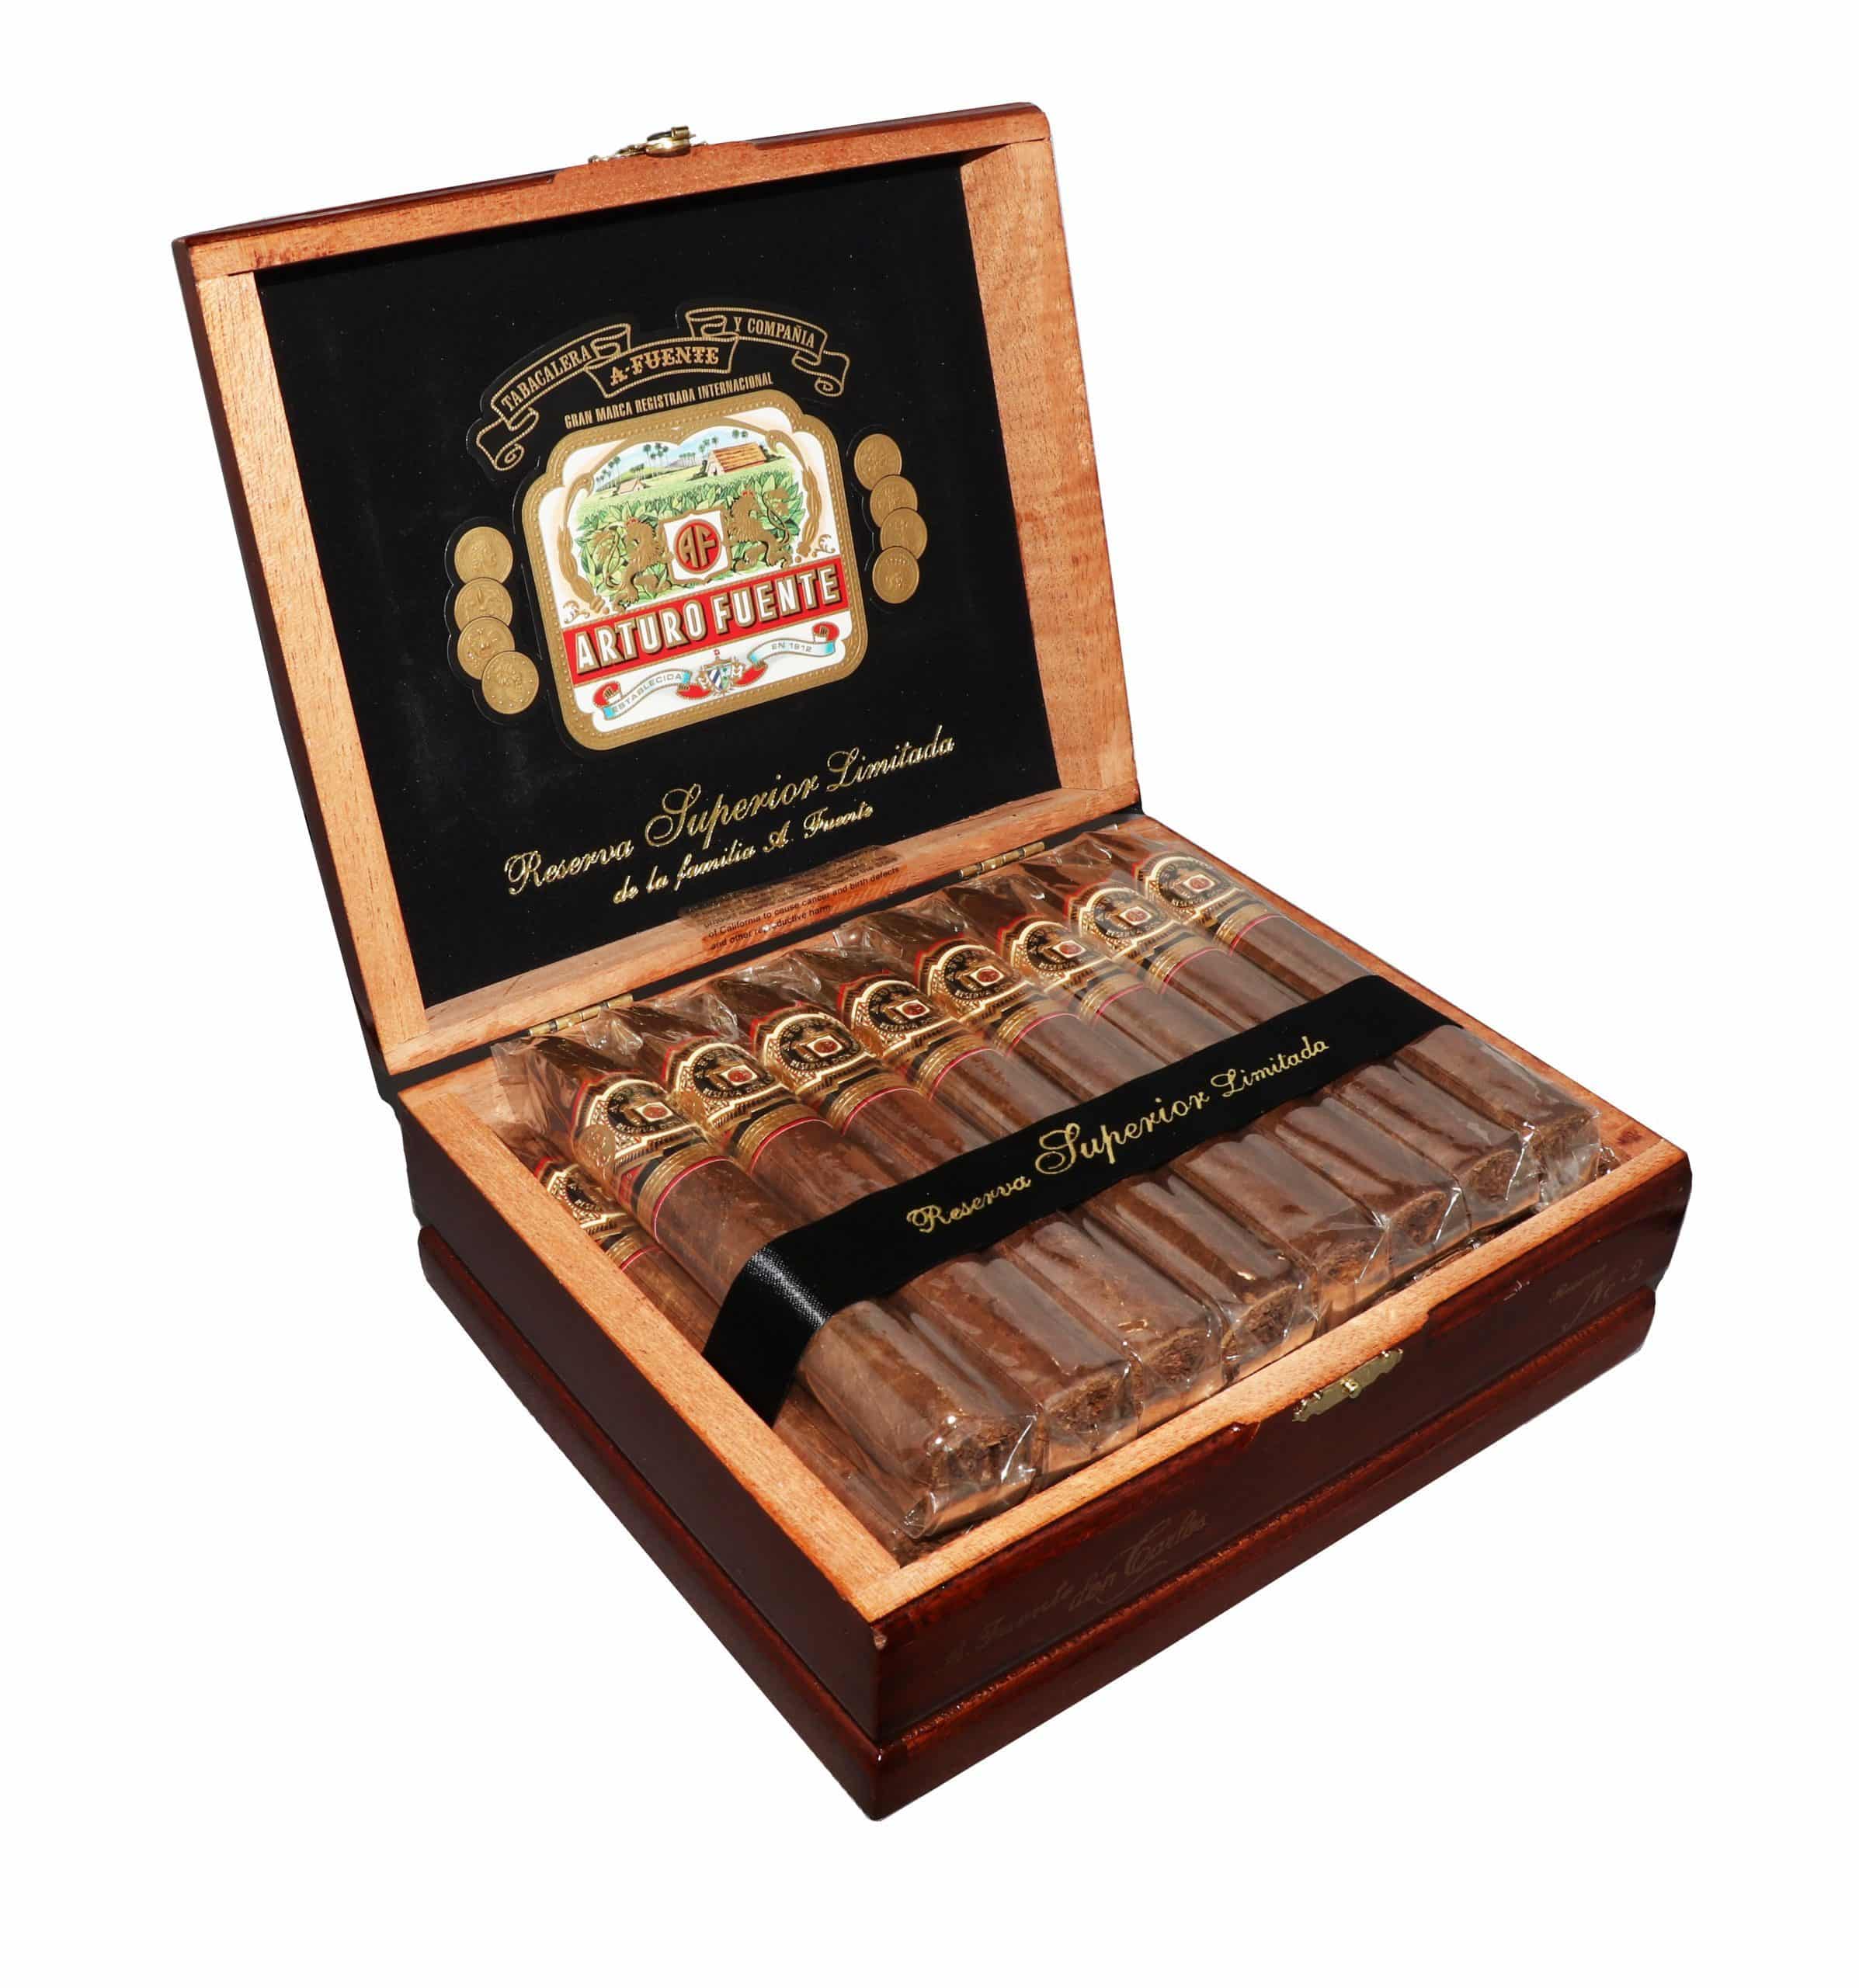 Open box of 25 count Arturo Fuente Don Carlos No. 2 cigars